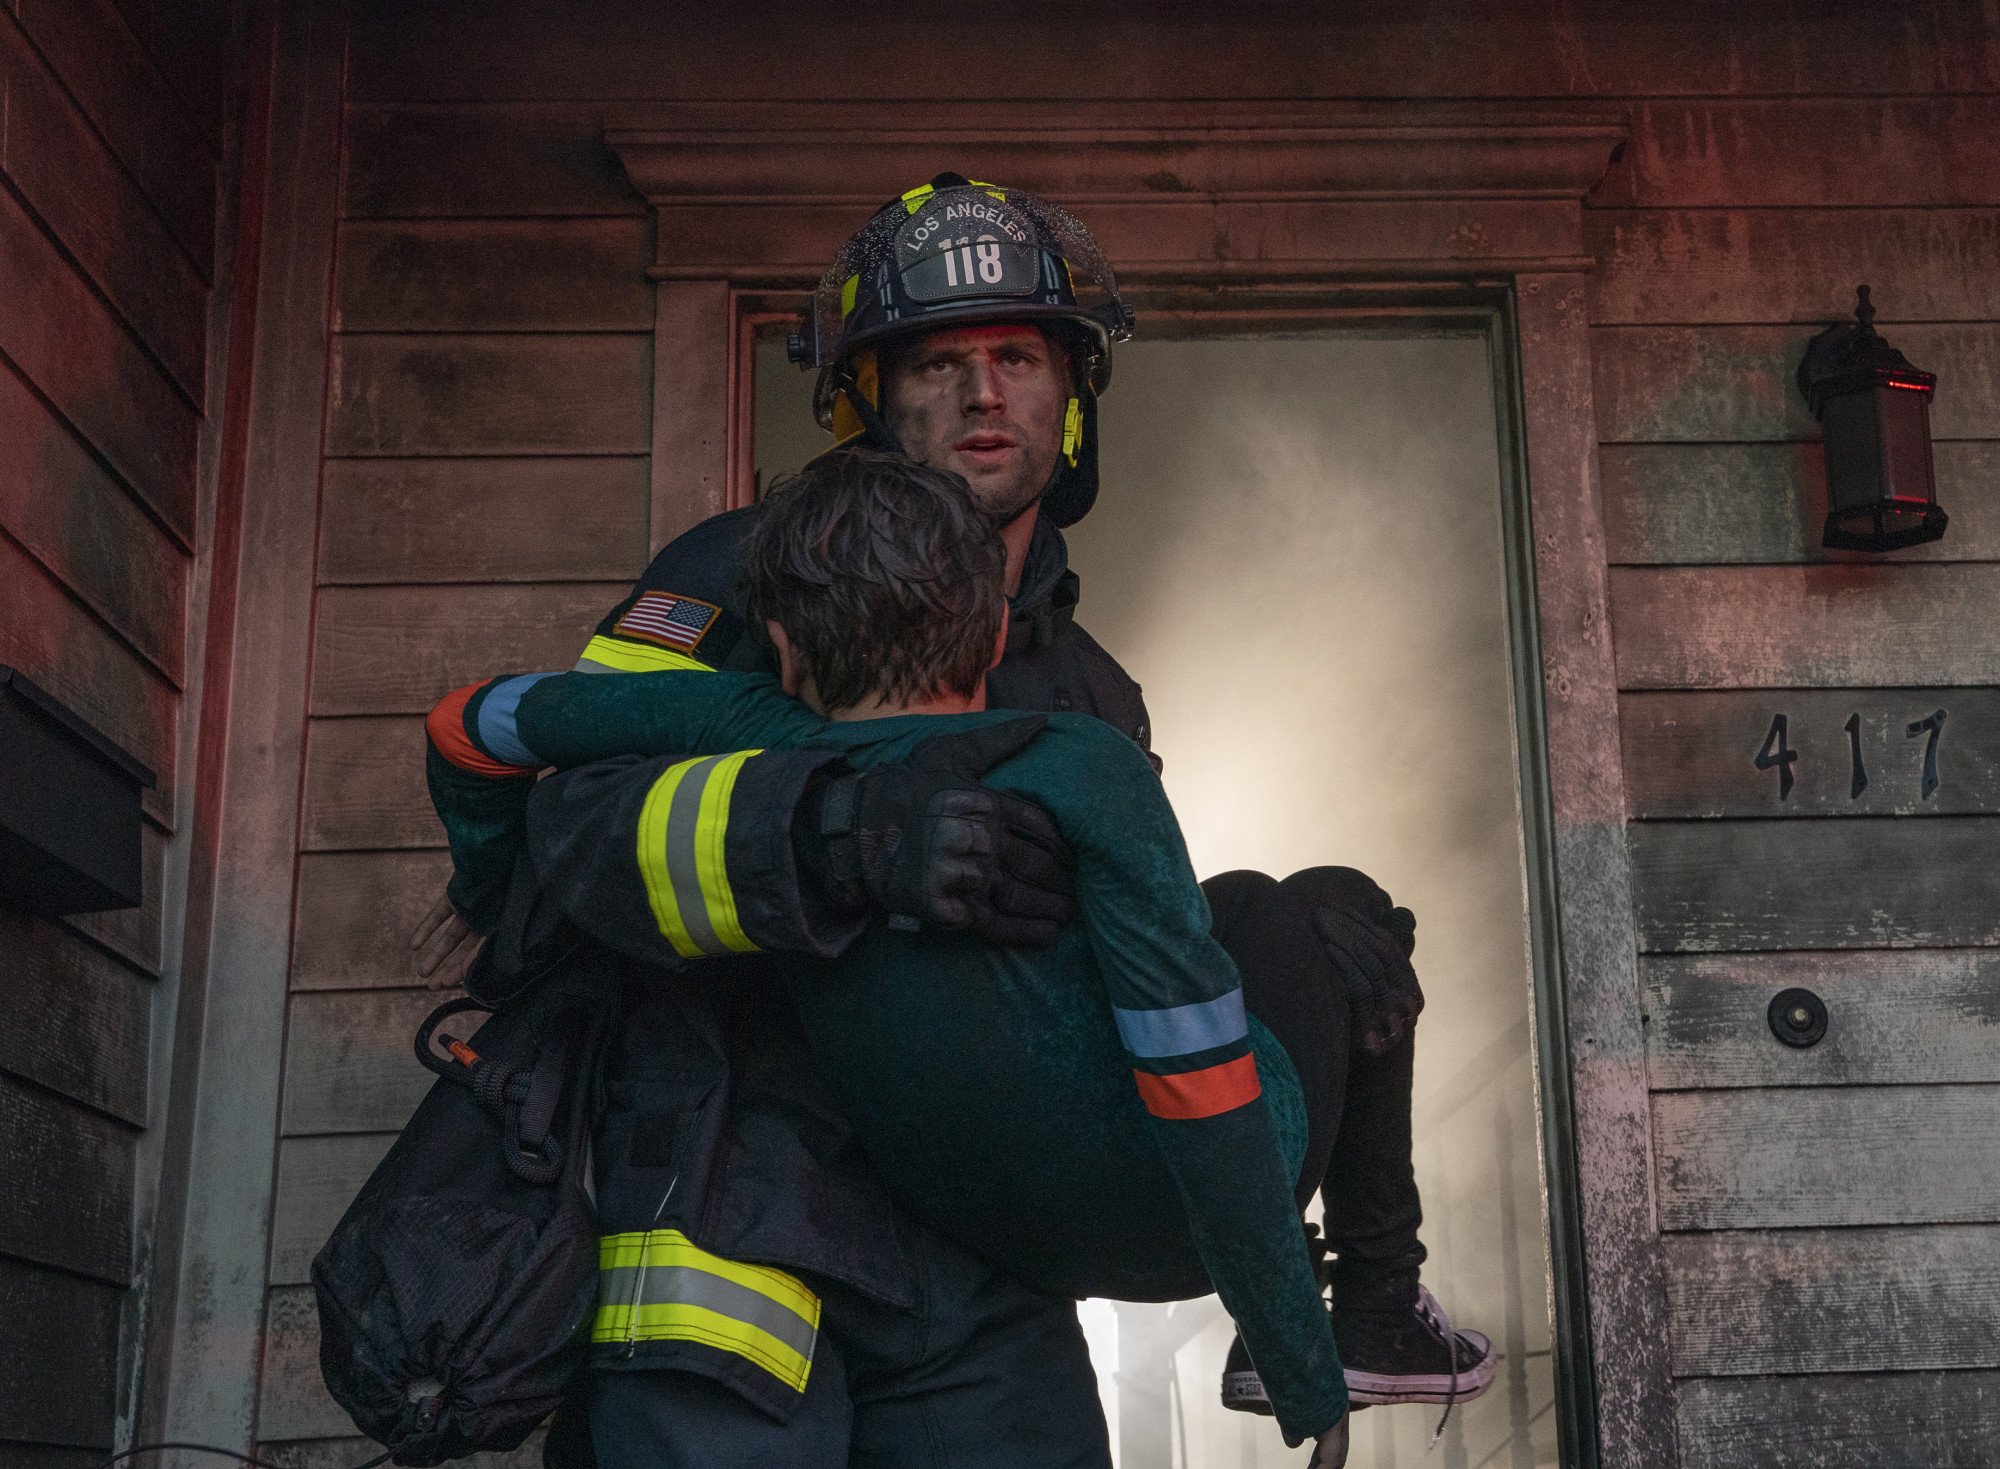 911: drama retorna com nova catástrofe no episódio 2x14 (trailer